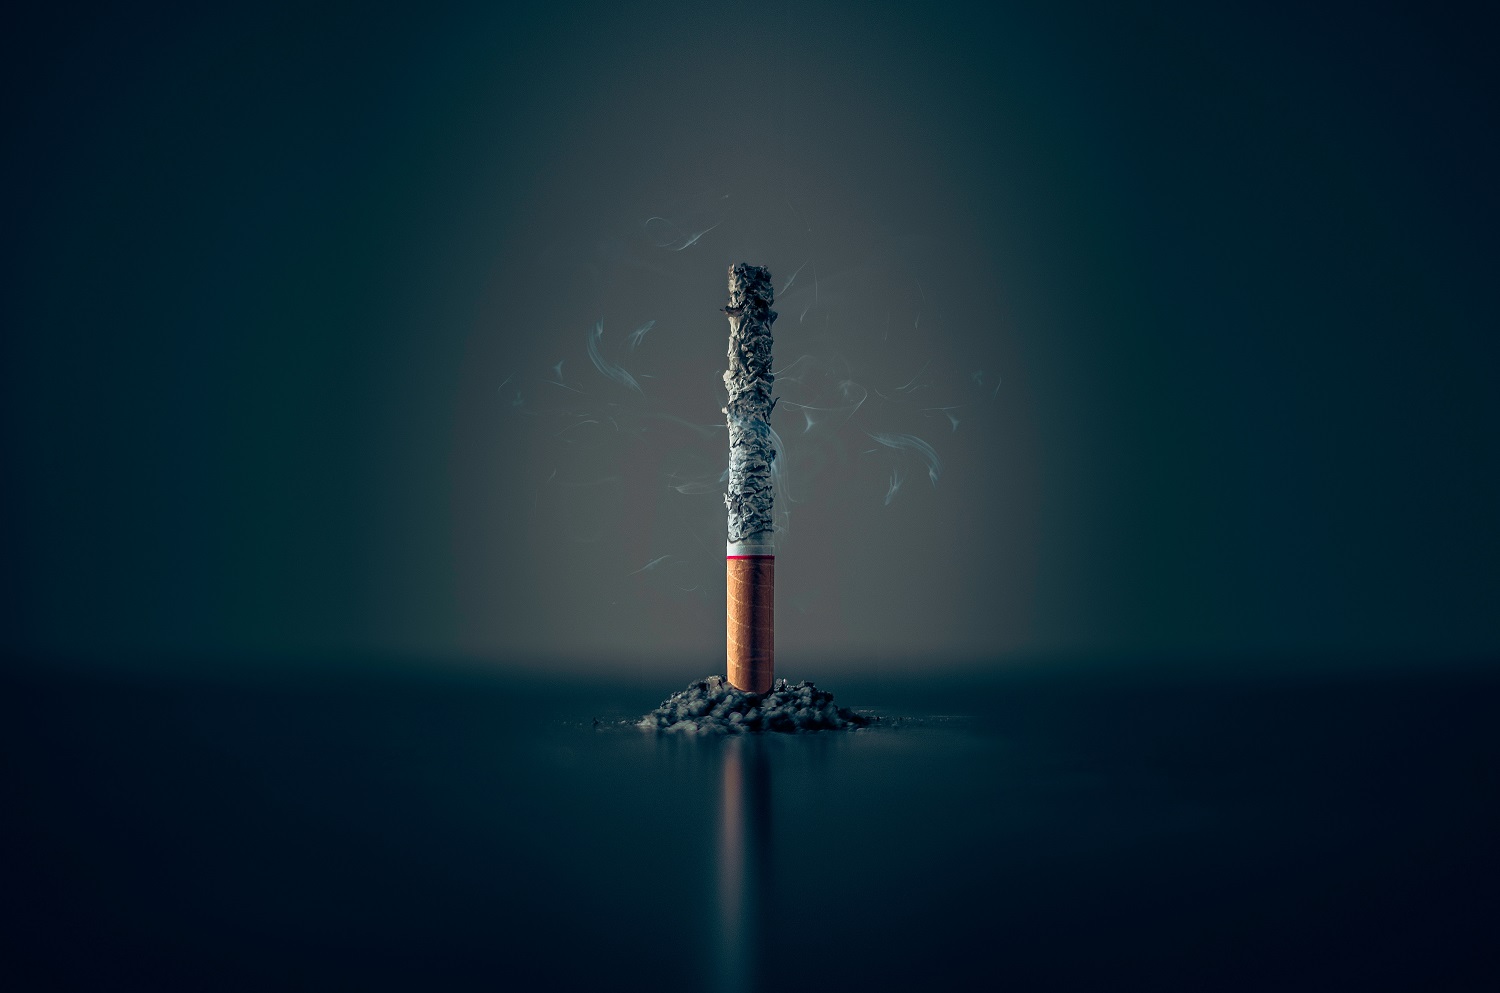 Seimo priimtą strategiją dėl tabako ir alkoholio kontrolės parlamentarai vertina nevienareikšmiškai: pasigenda pozicijos dėl rūkymo žalos mažinimo